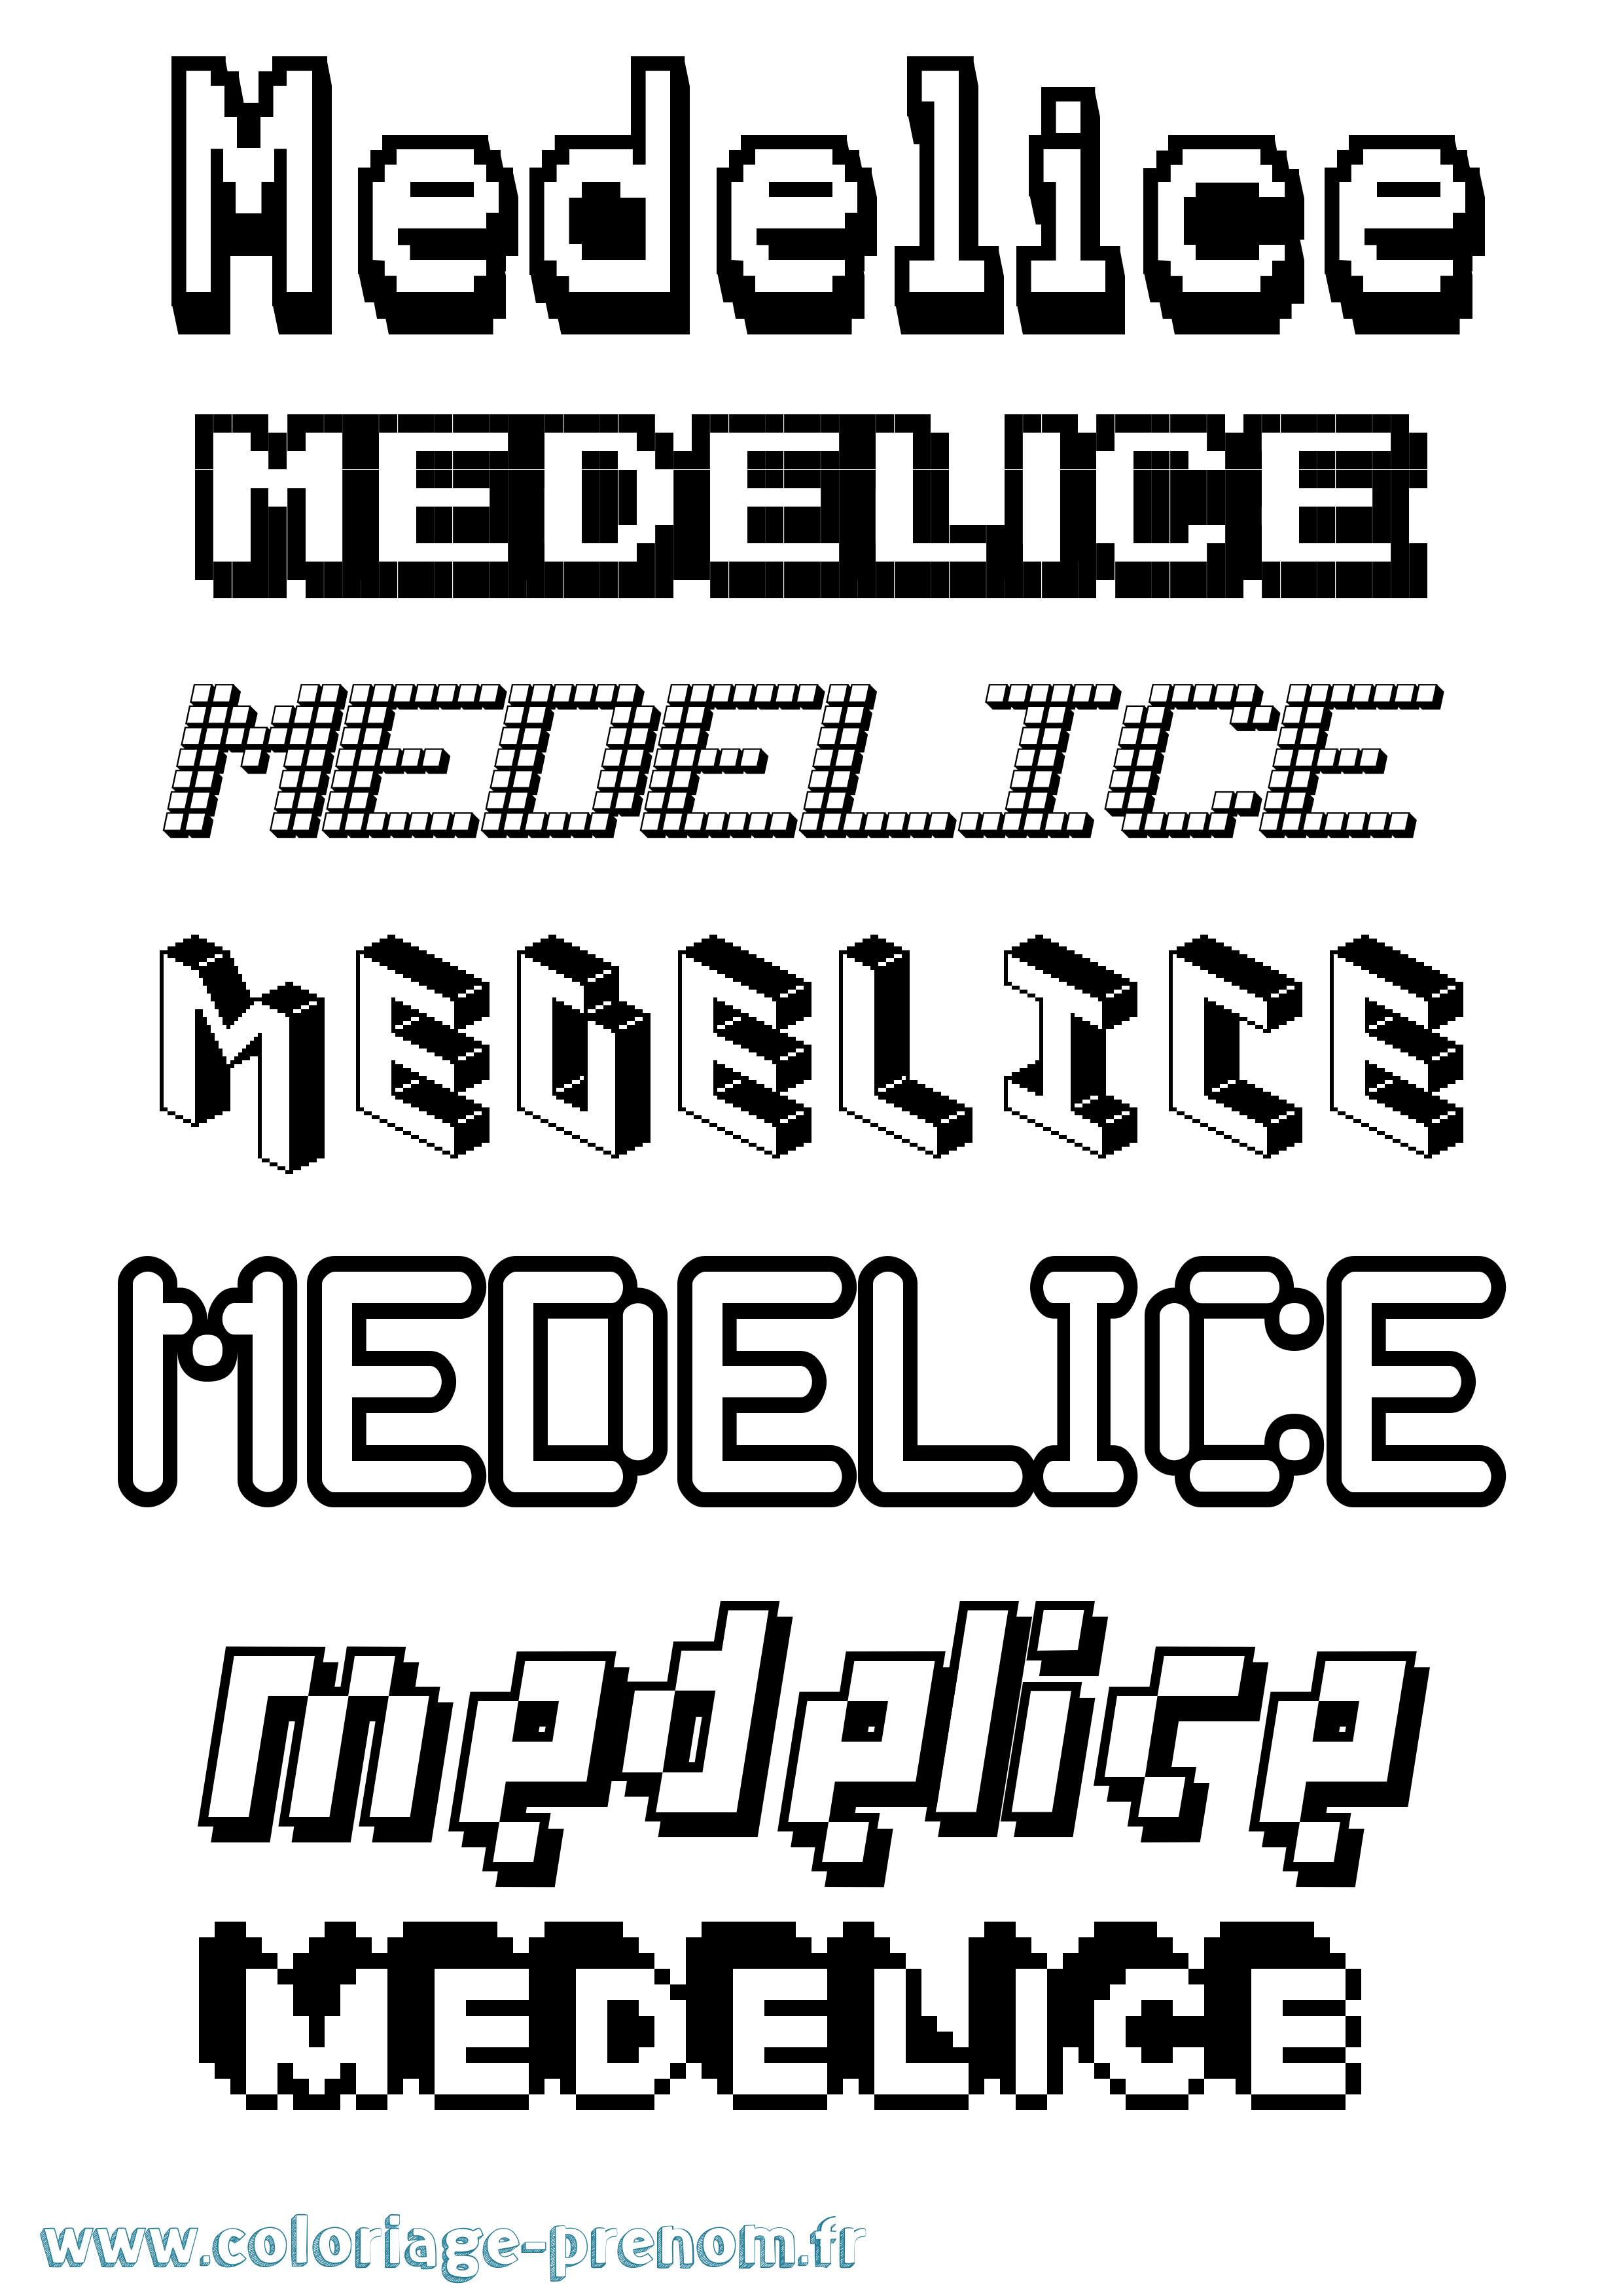 Coloriage prénom Medelice Pixel